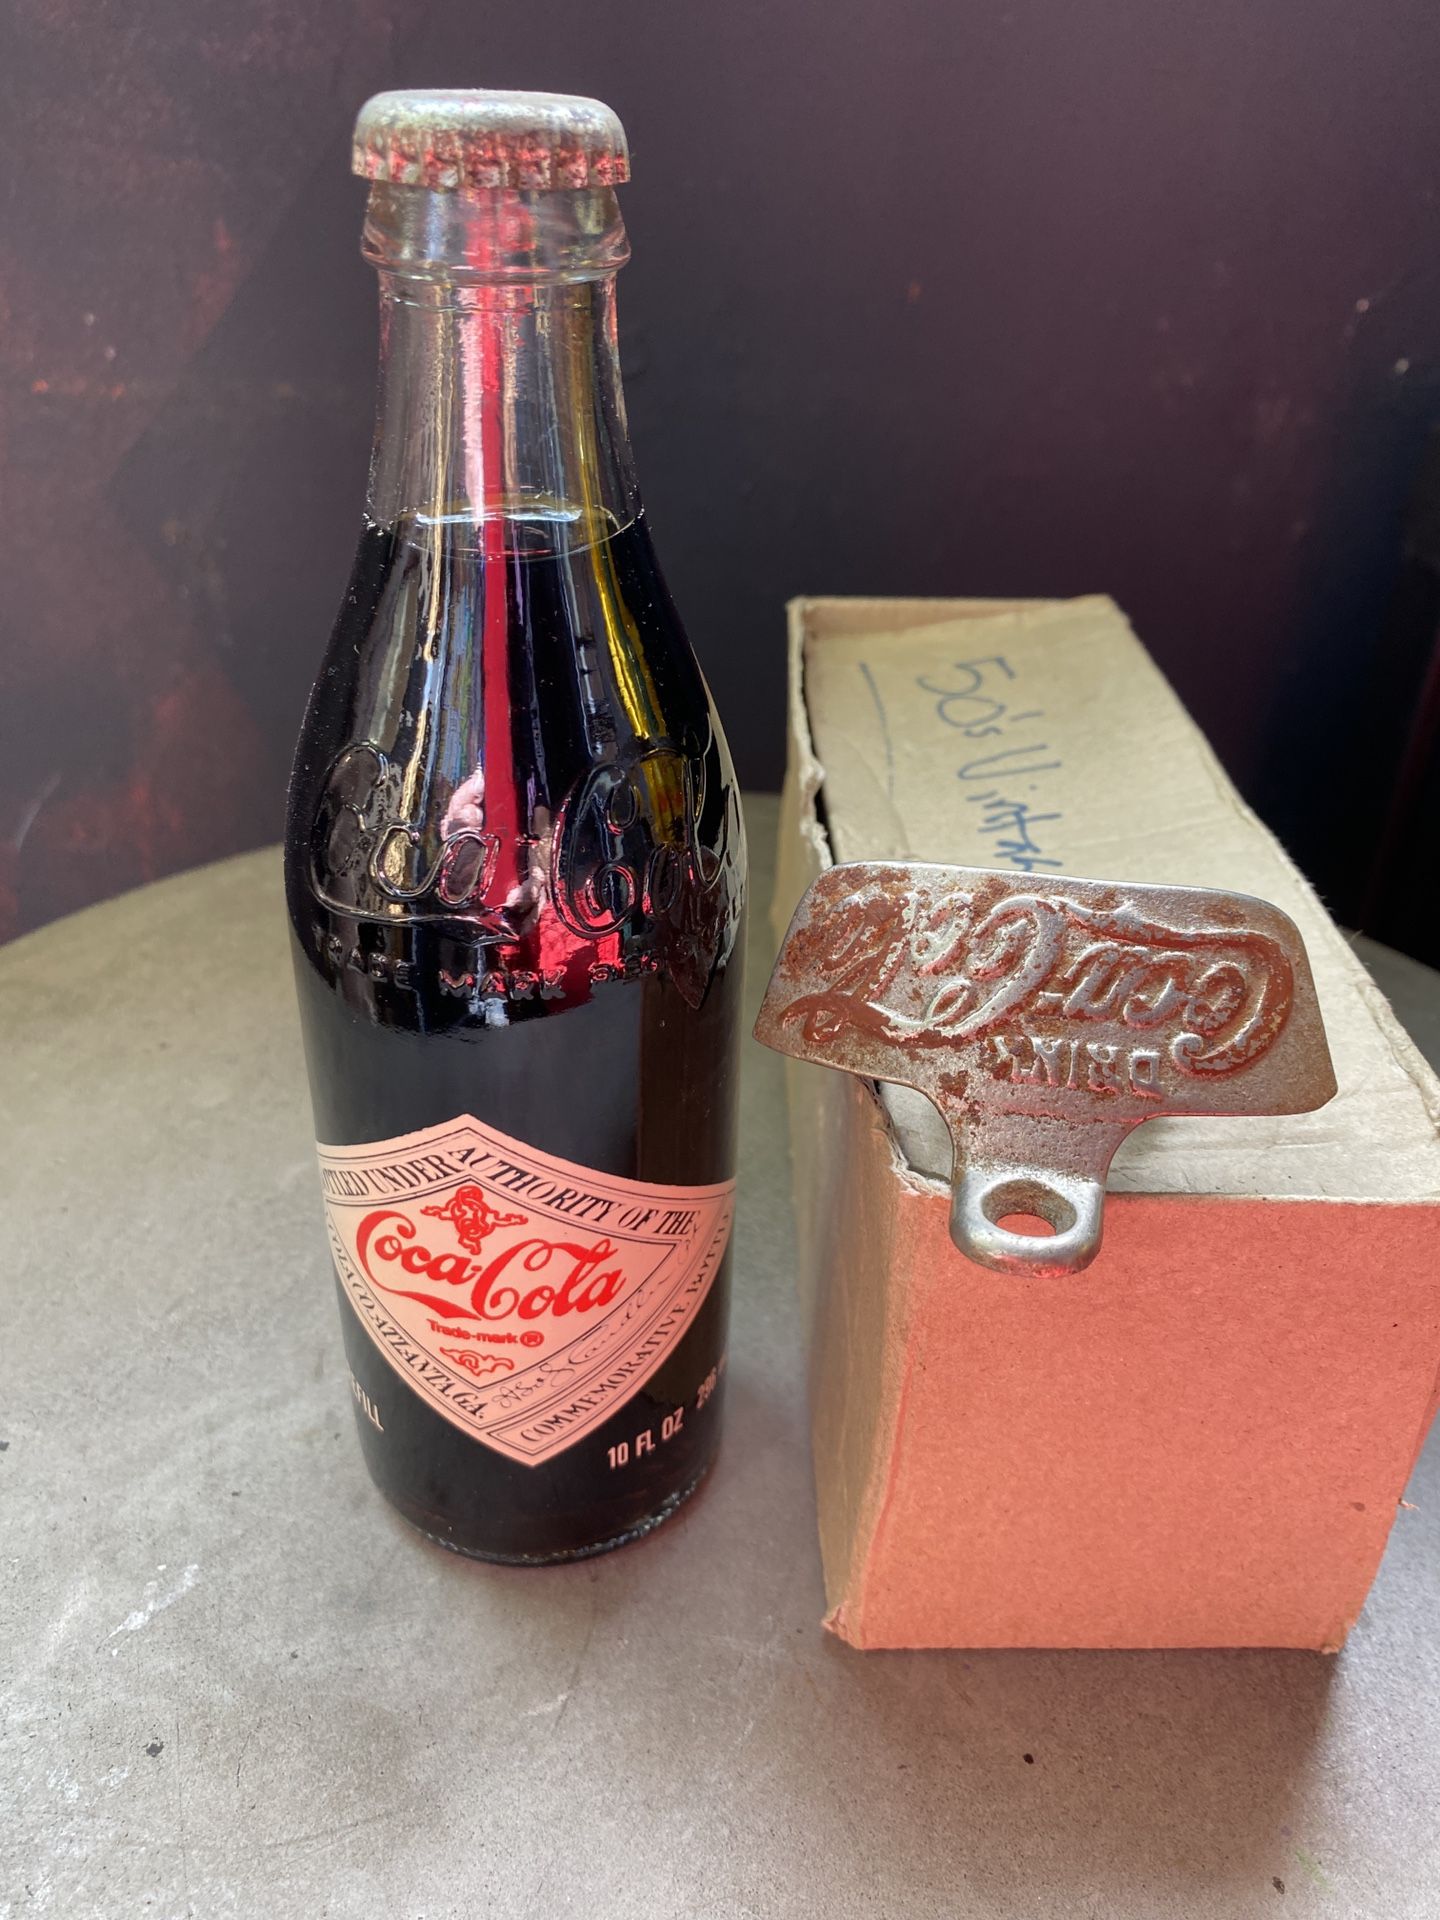 Original Antique Coke Cola Bottle Opener and unopened Coke Cola Bottle